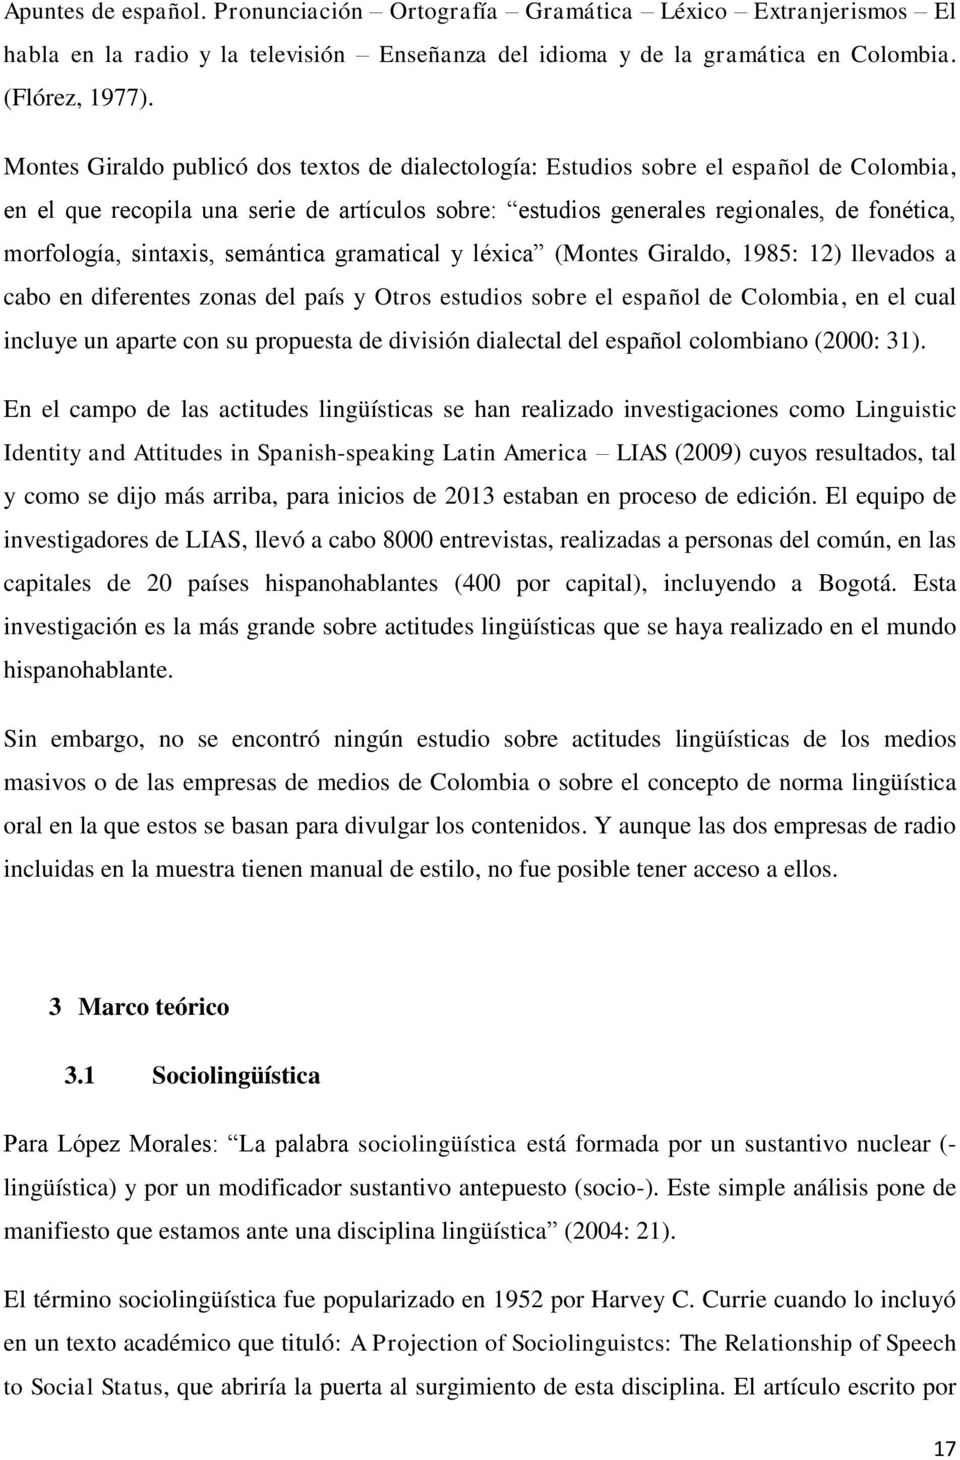 sintaxis, semántica gramatical y léxica (Montes Giraldo, 1985: 12) llevados a cabo en diferentes zonas del país y Otros estudios sobre el español de Colombia, en el cual incluye un aparte con su